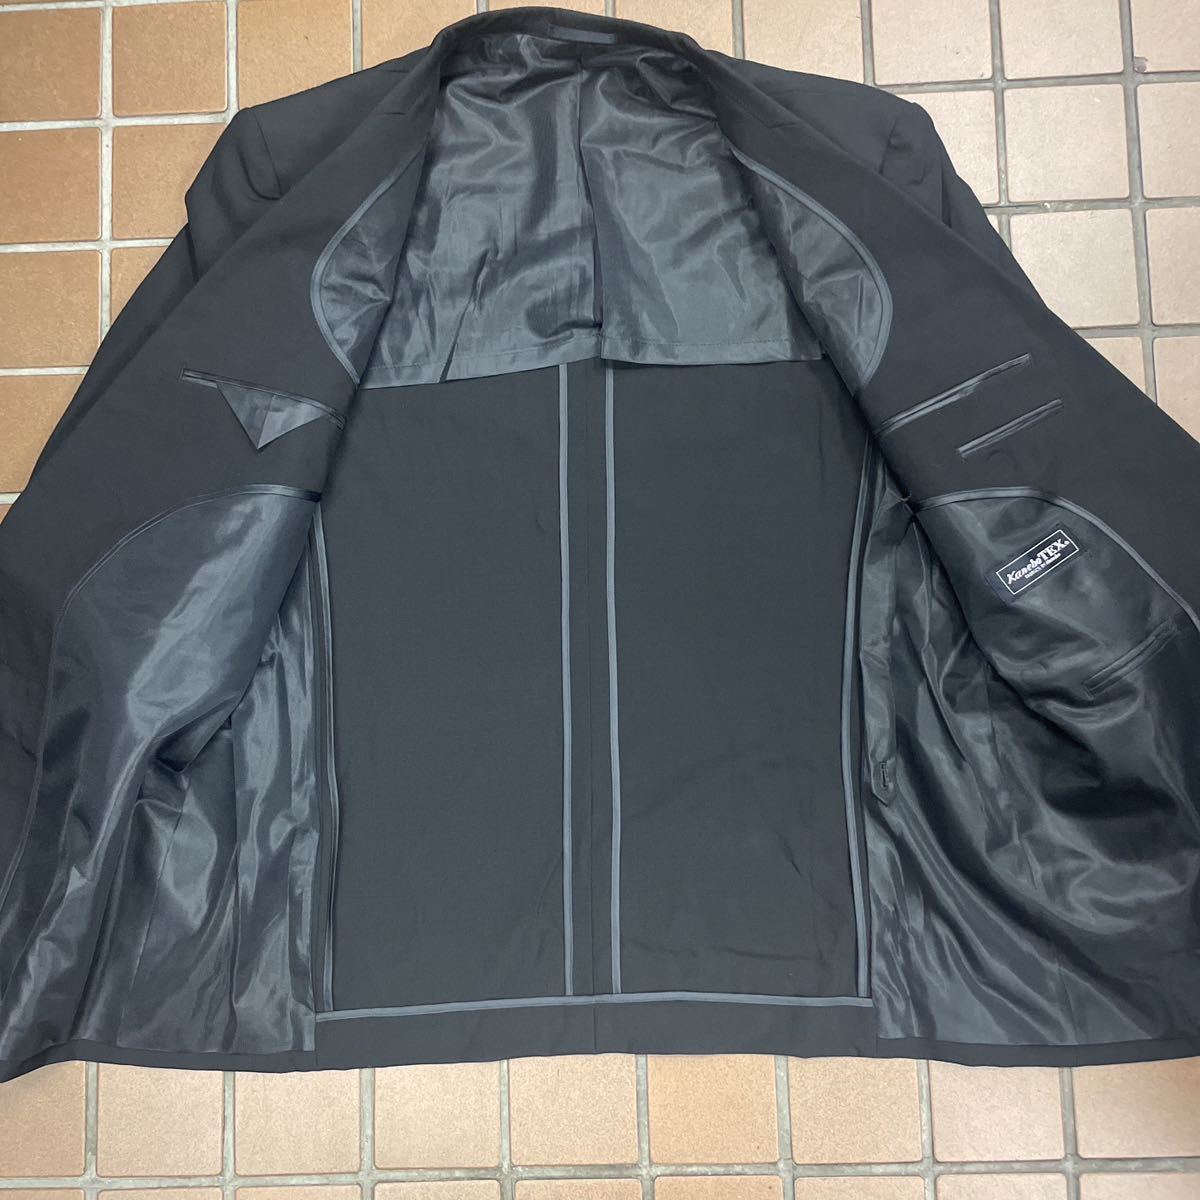  новый товар * супер-скидка /. одежда траурный костюм Kanebo костюм / большой размер BB5/ черный чёрный /no- Benz / праздничные обряды регулировщик есть хорошая вещь качество материалы *kaneboTEX сделано в Японии 